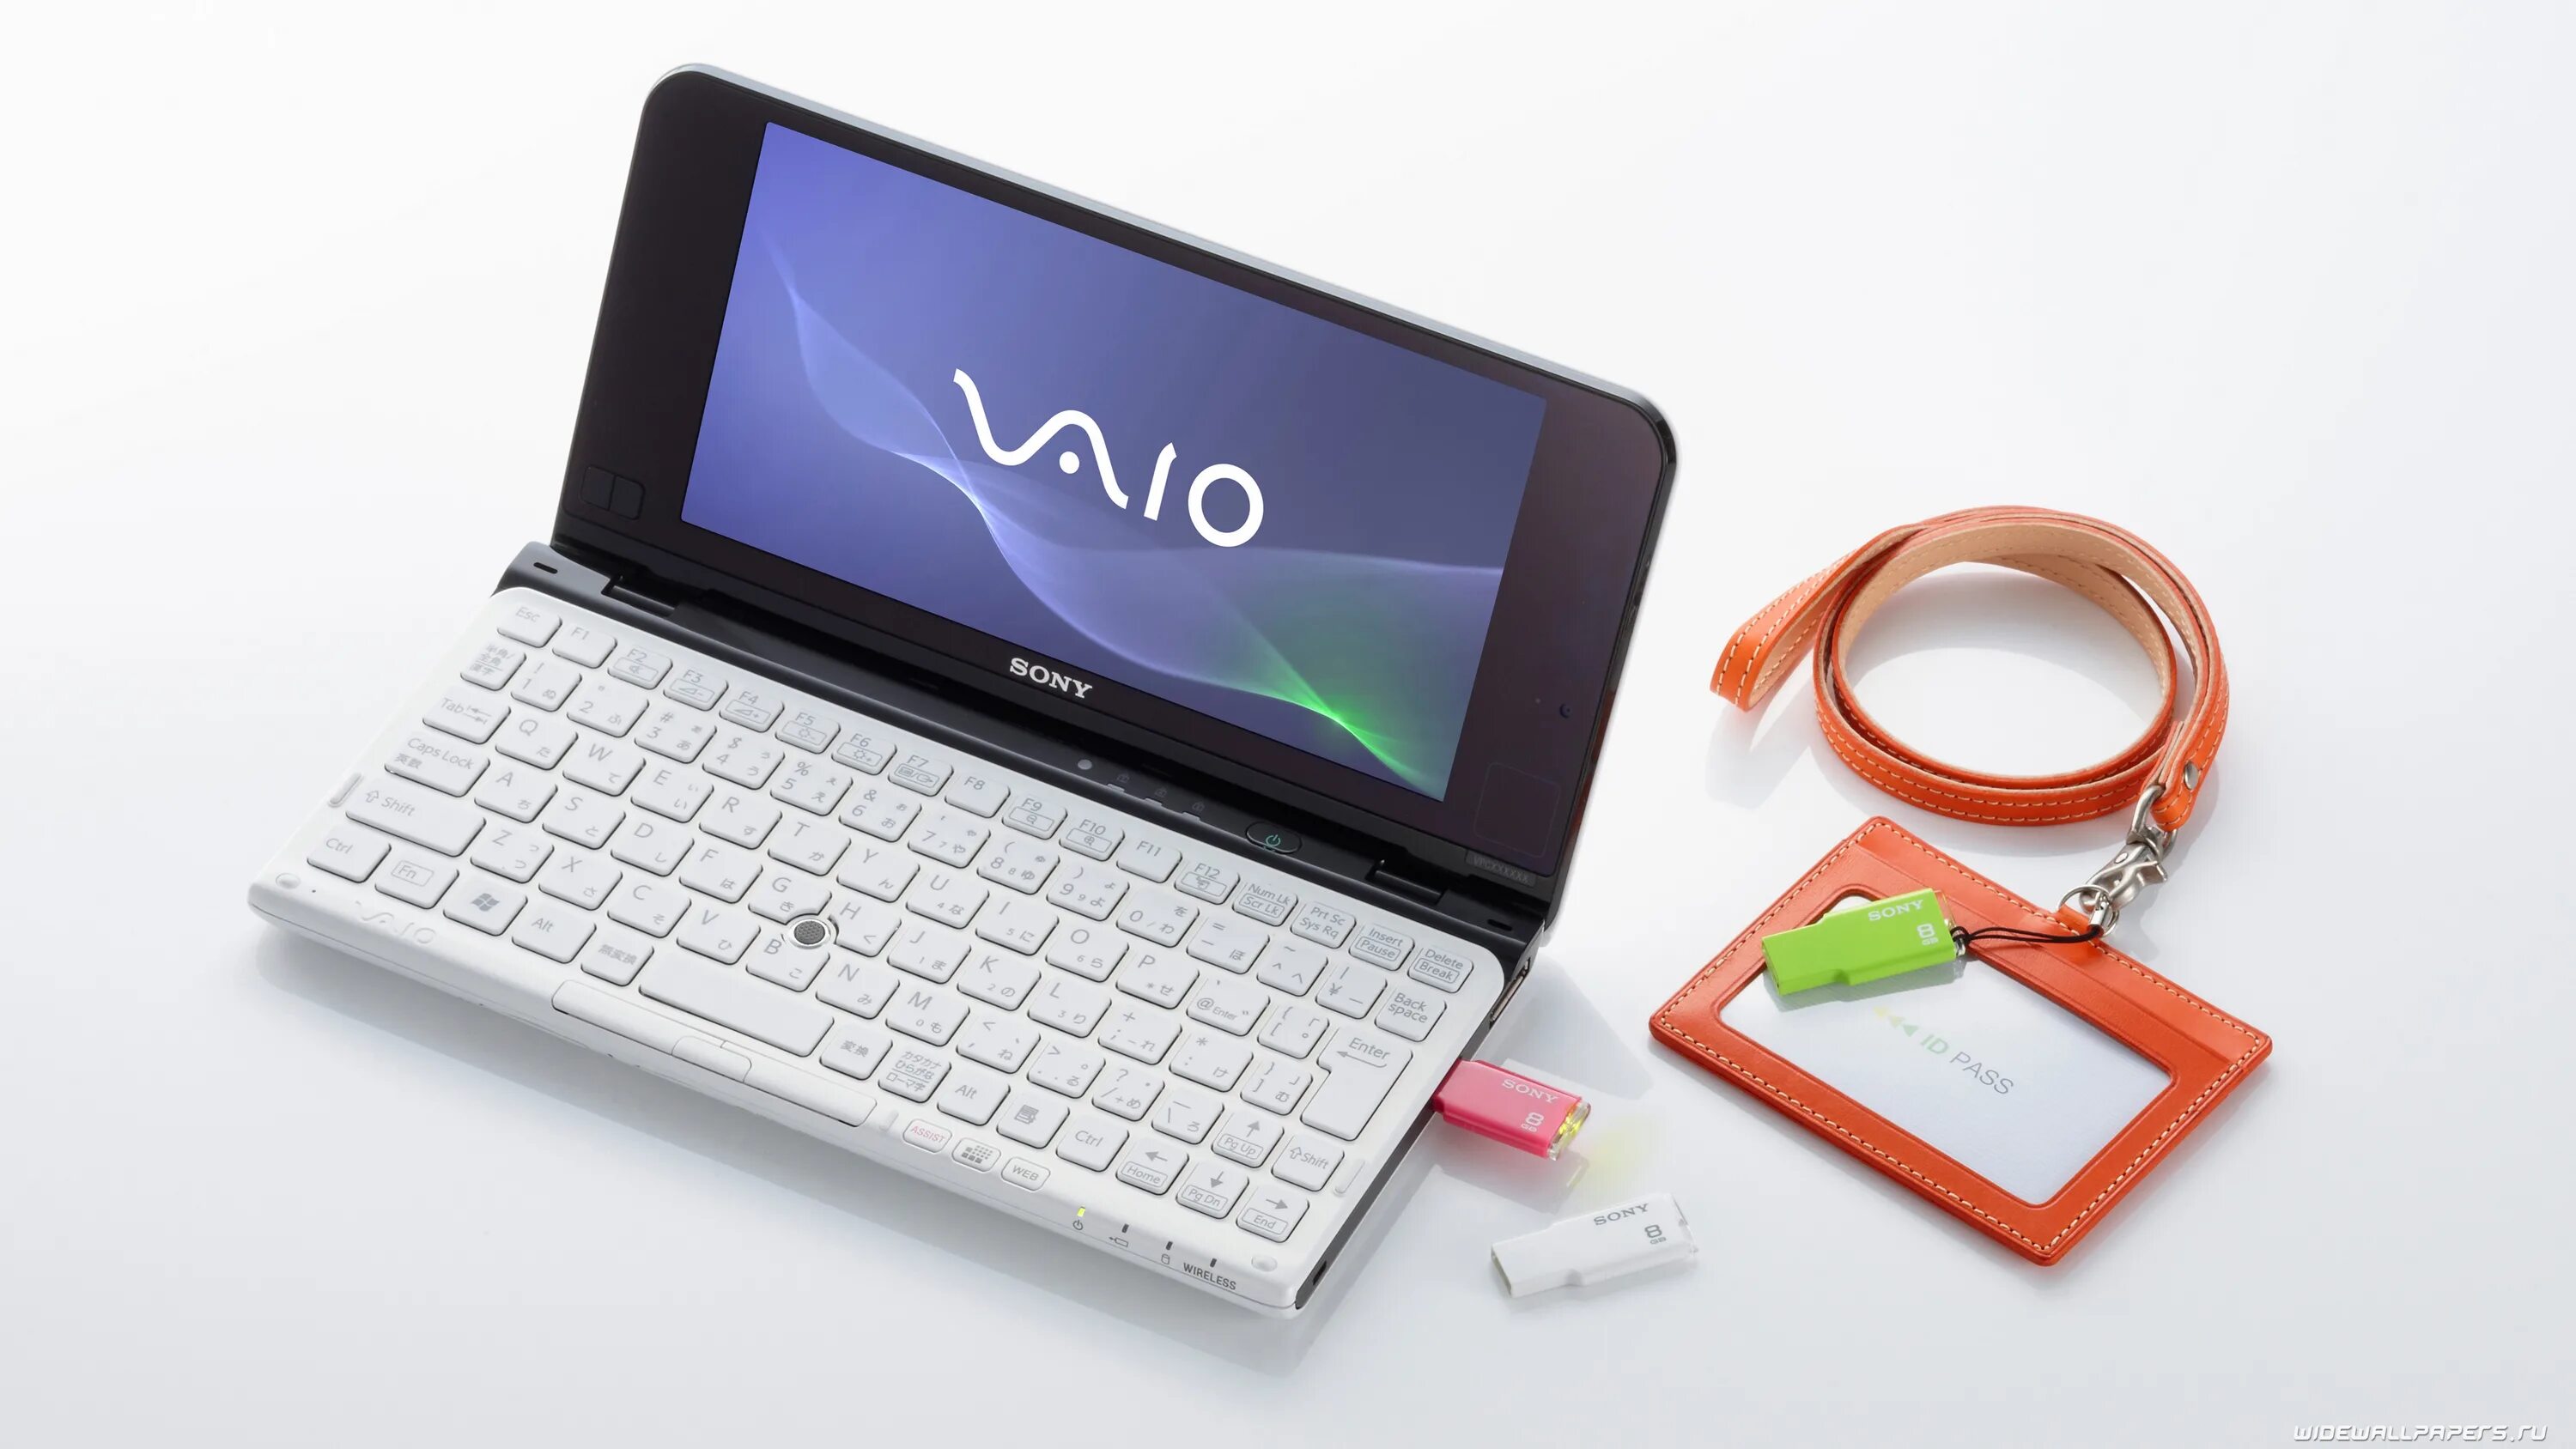 Модели маленьких ноутбуков. Sony VAIO маленький. Нетбук Sony VAIO Mini Laptop. Sony VAIO 500g флешка. Сони Вайо ноутбук маленький.